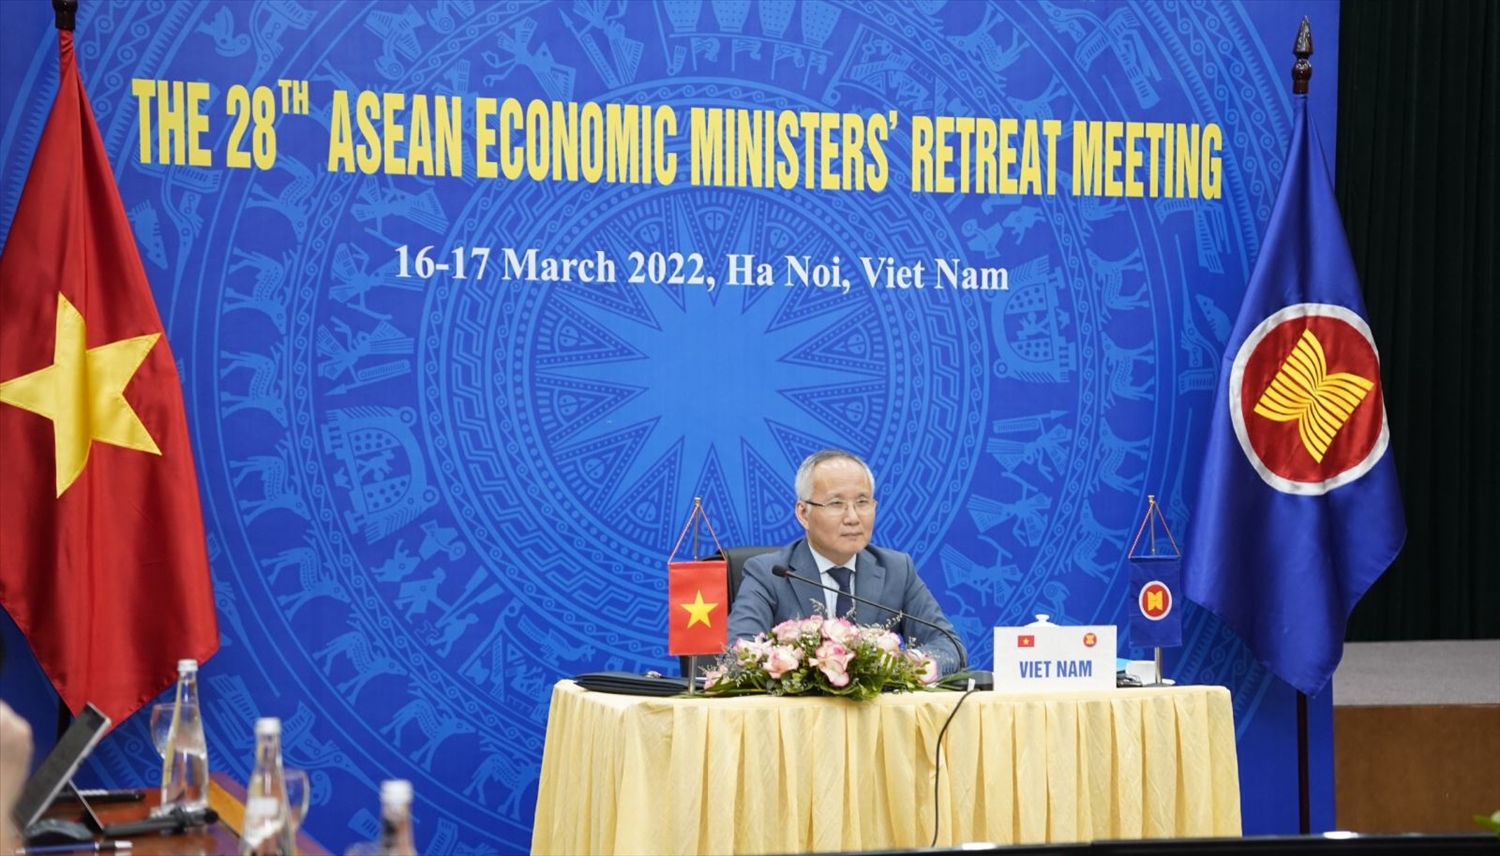 Thứ trưởng Bộ Công Thương Trần Quốc Khánh tham dự Hội nghị Bộ trưởng Kinh tế ASEAN hẹp lần thứ 28. Ảnh: moit.gov.vn